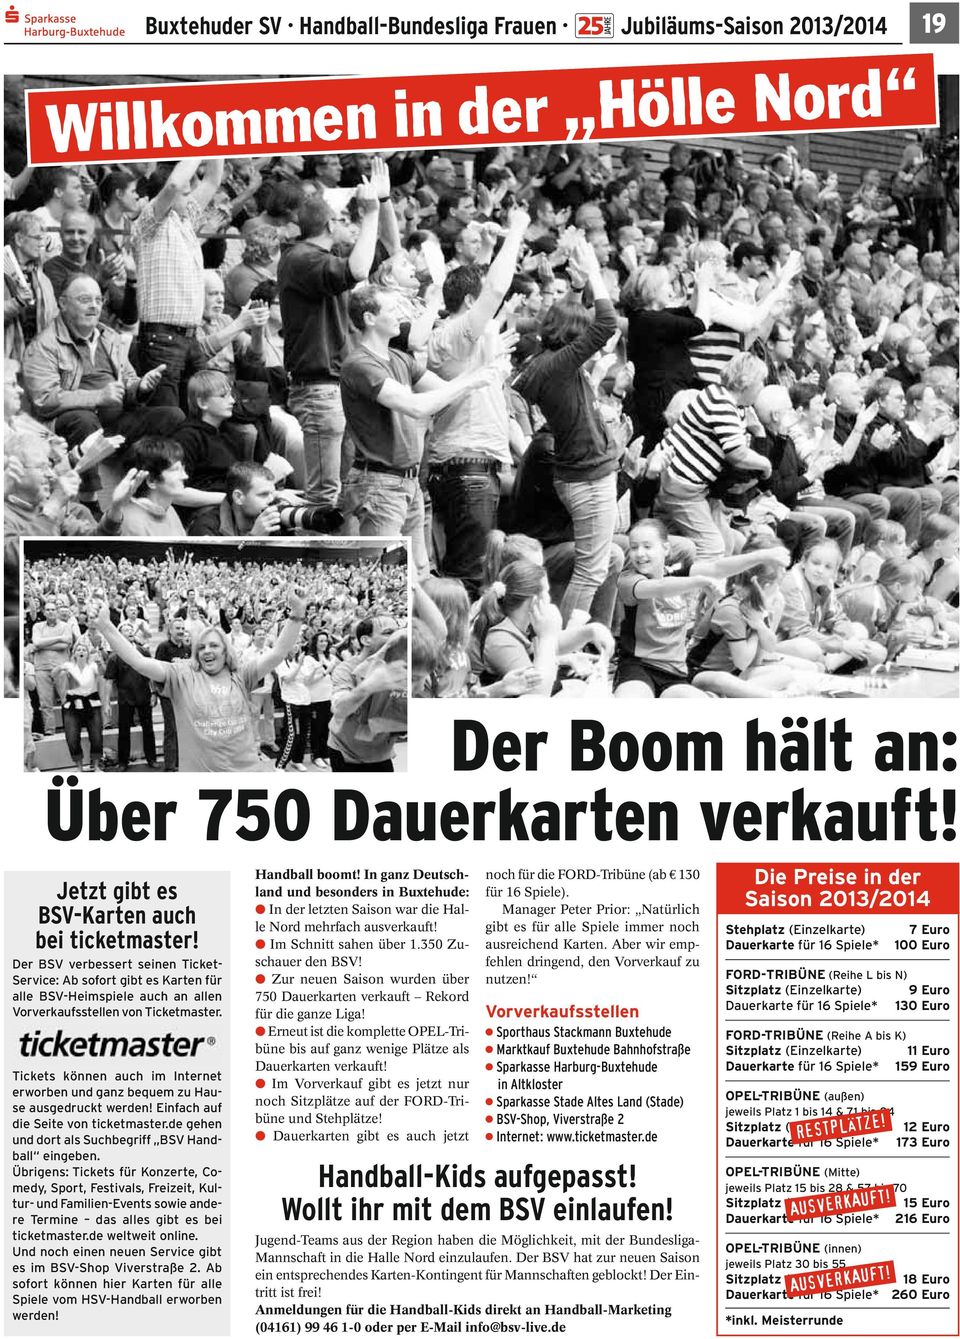 Tickets können auch im Internet erworben und ganz bequem zu Hause ausgedruckt werden! Einfach auf die Seite von ticketmaster.de gehen und dort als Suchbegriff BSV Handball eingeben.